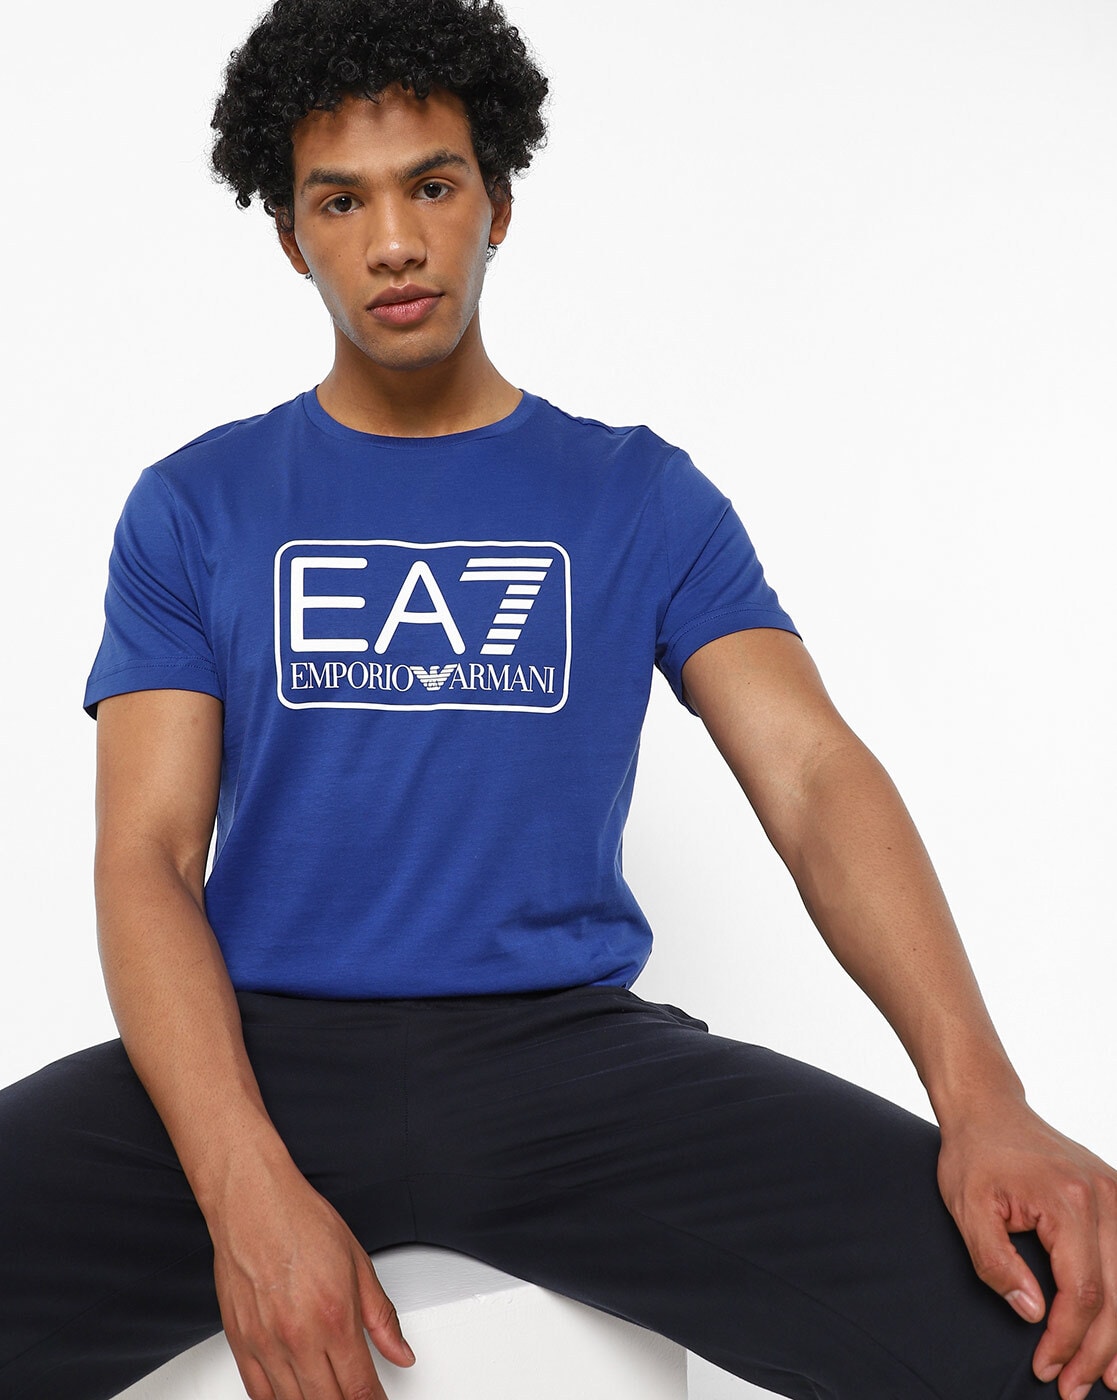 Buy Blue Tshirts for Men by EA7 Emporio Armani Online 